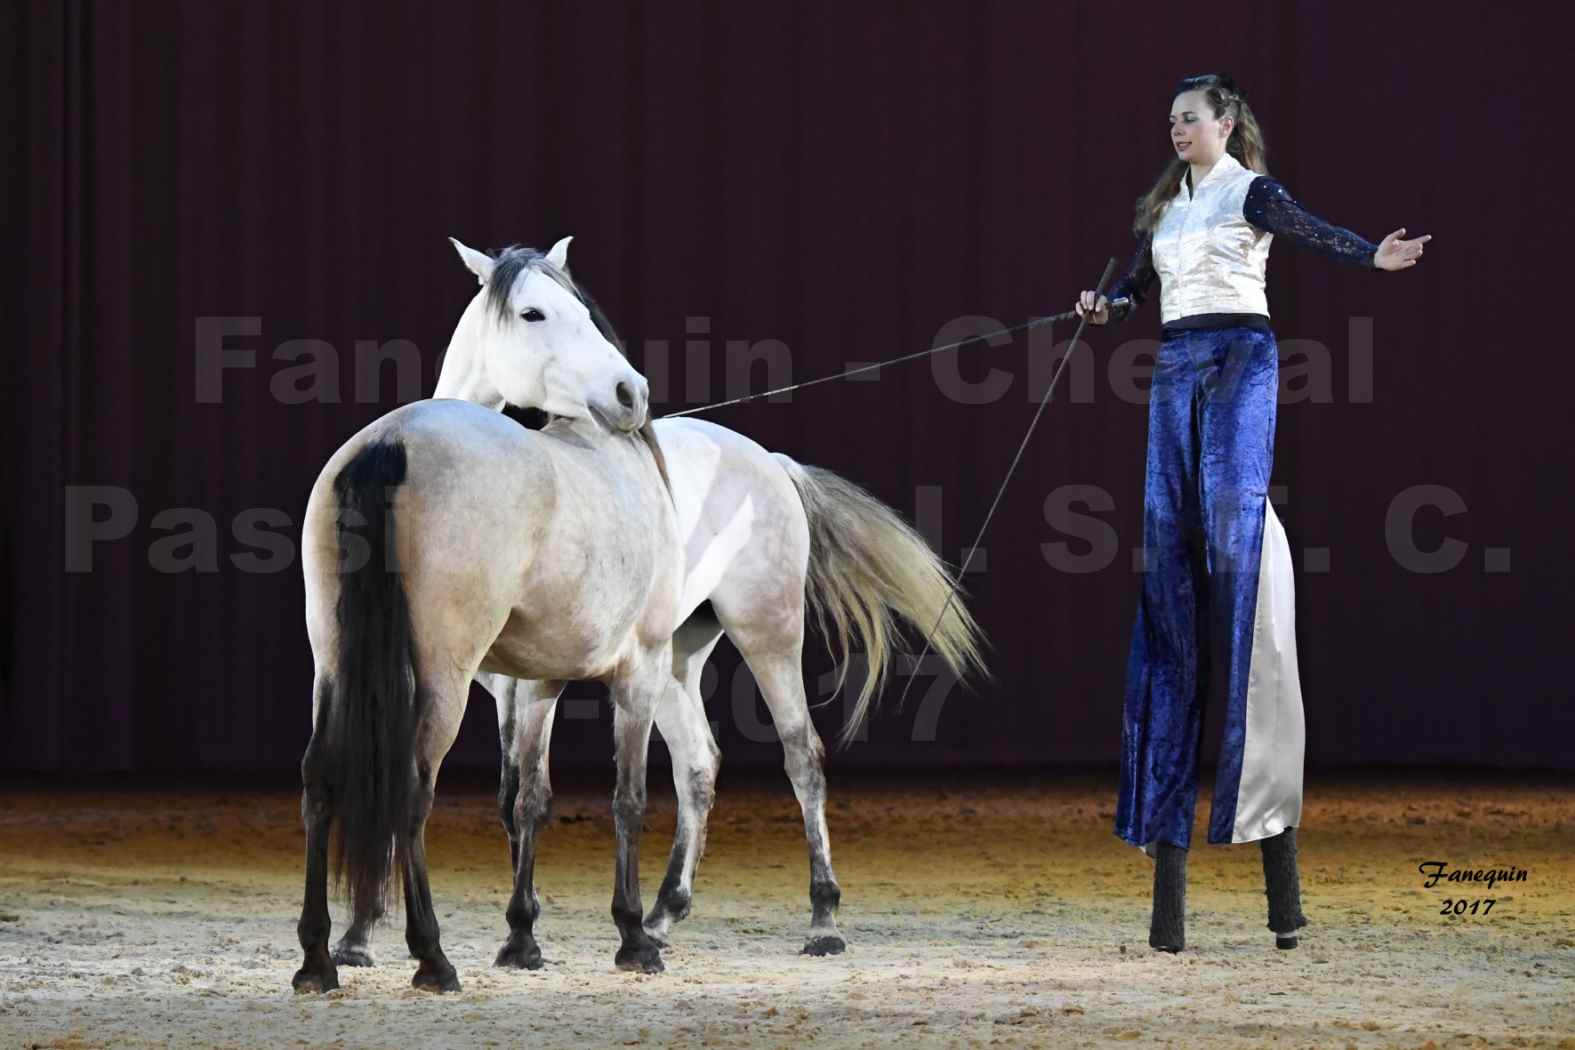 Cheval Passion 2017 - M. I. S. E. C. - Lucie VAUTHIER & 3 chevaux en liberté - 06